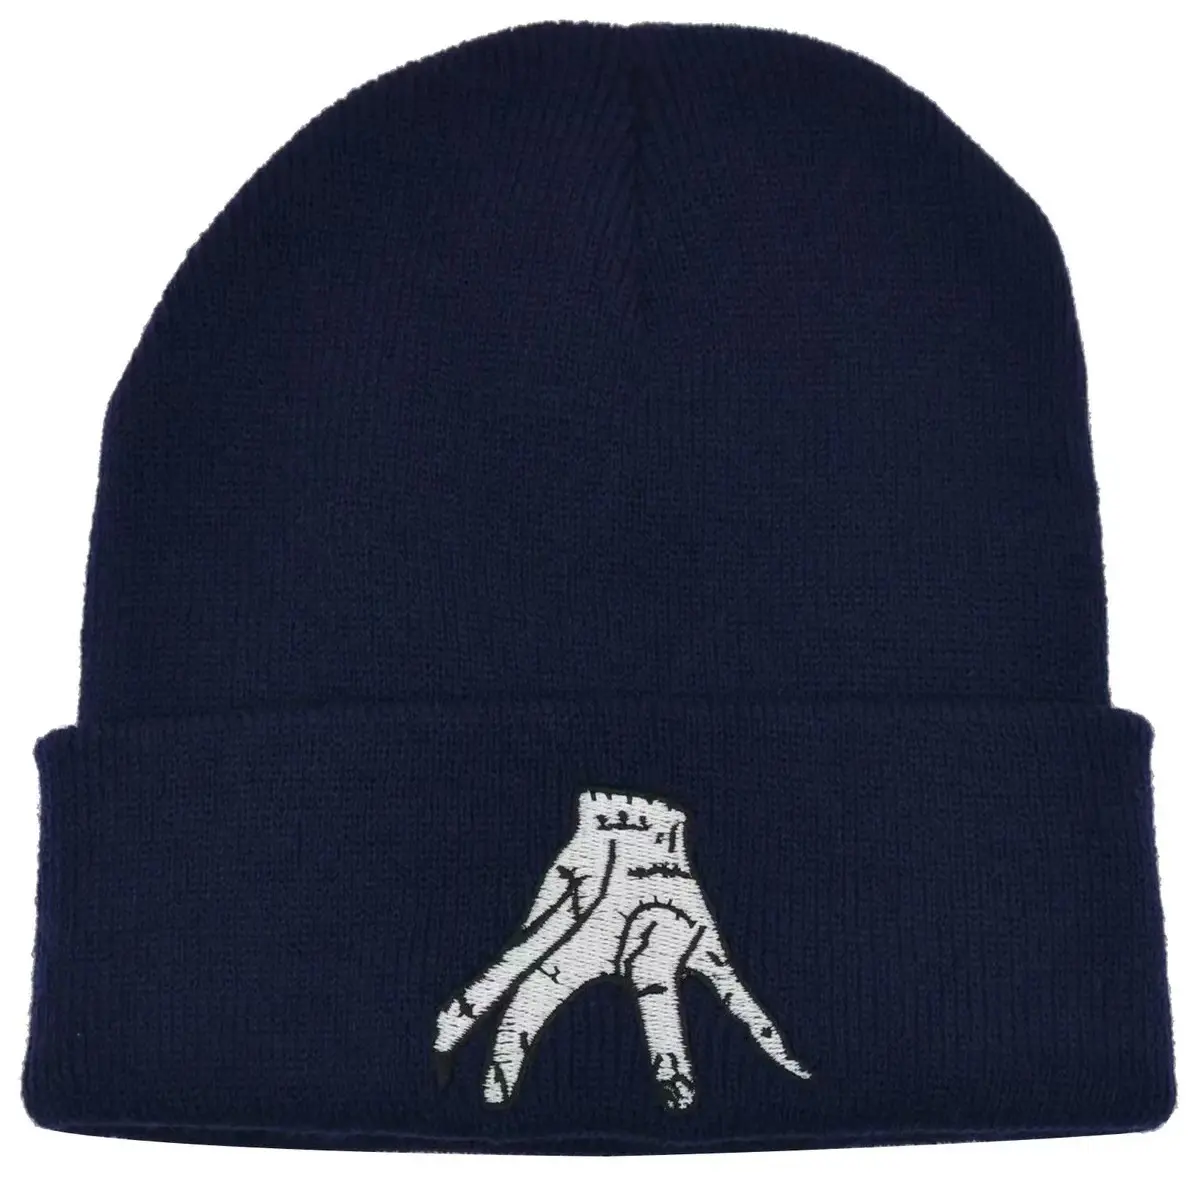 Amerikan yüksek sokak moda yetişkin sıcak spor örgü kış şapka örgü şapka için özel